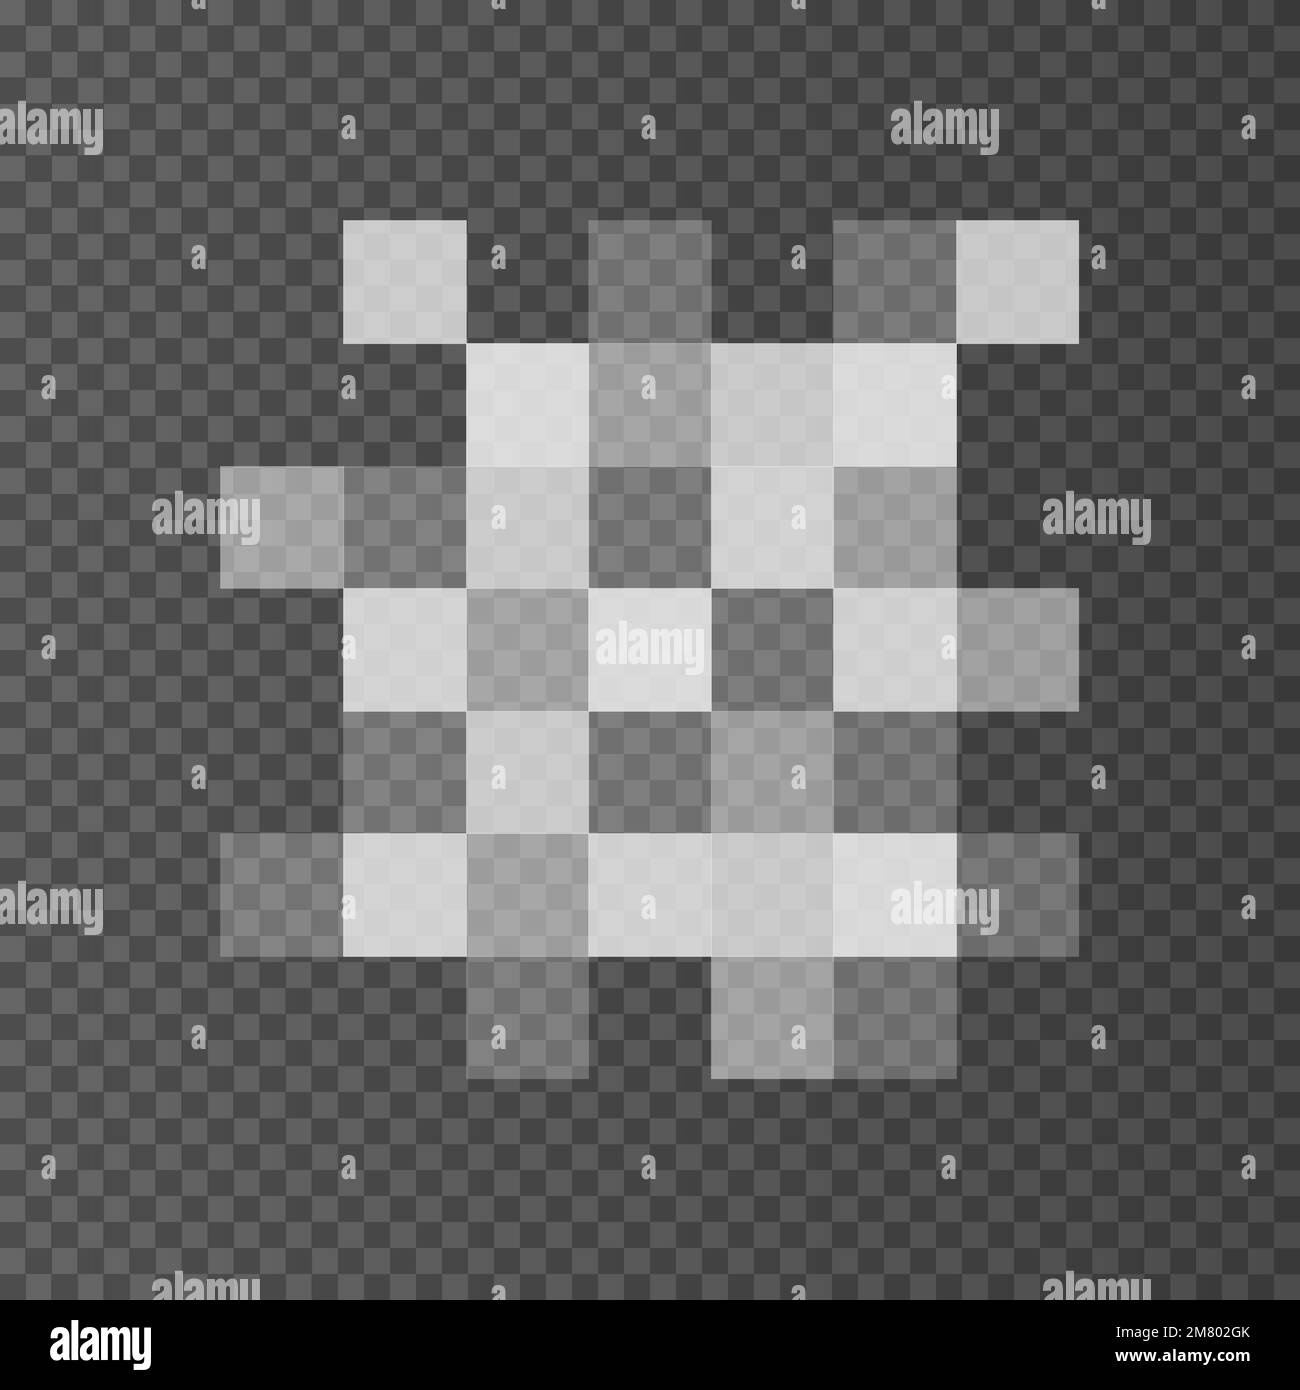 Segni censurati in pixel isolati su sfondo trasparente. Illustrazione vettoriale. EPS 10. Illustrazione Vettoriale